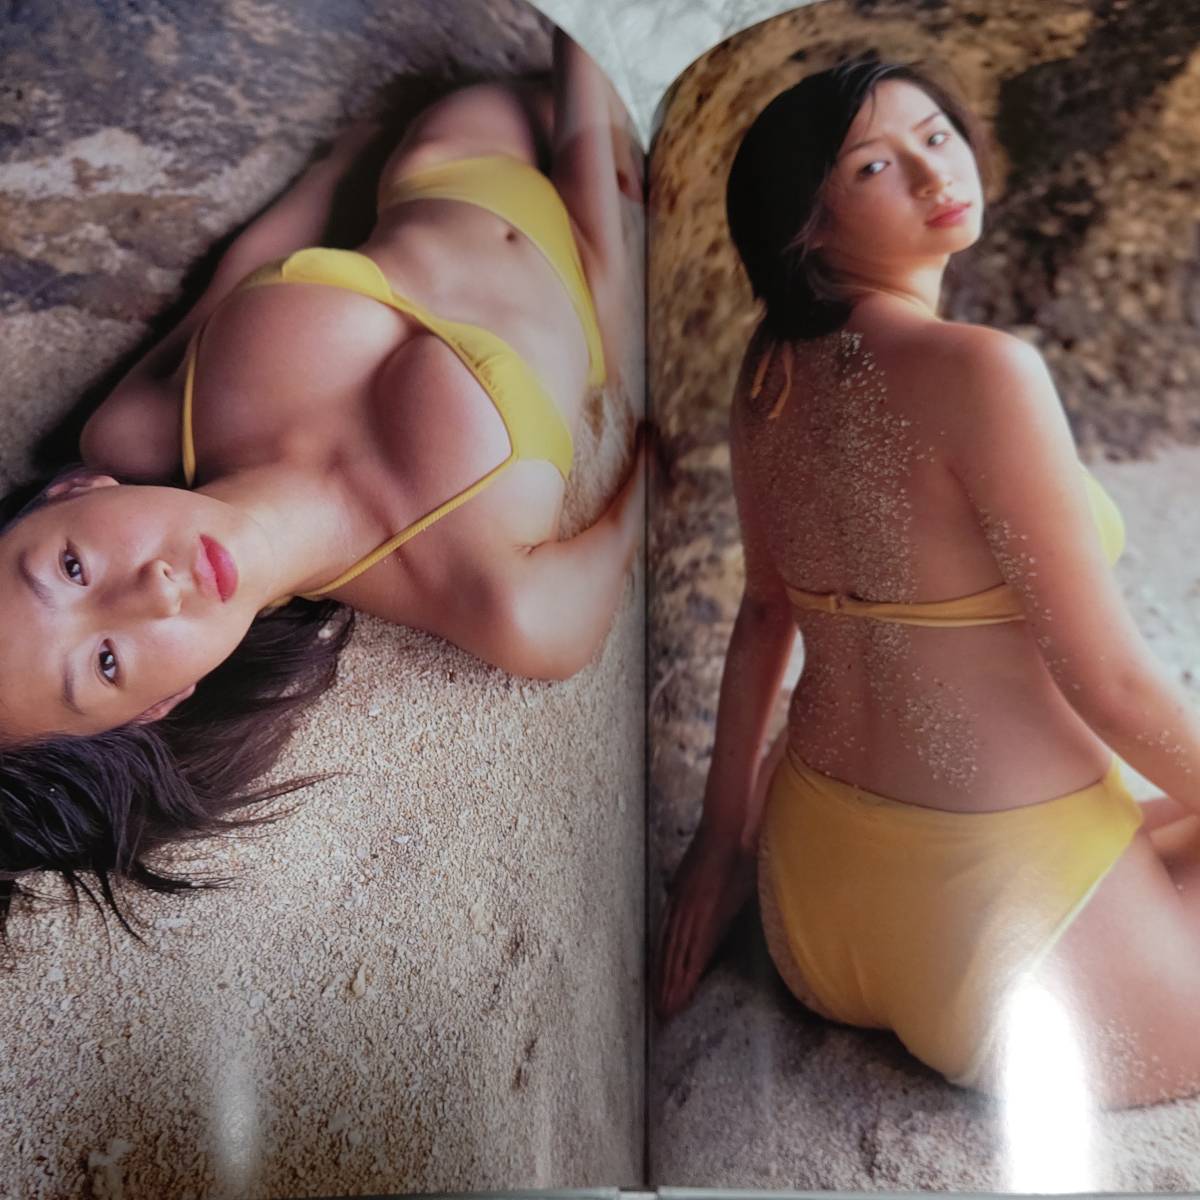  Sakai Wakana photoalbum . feeling bikini model swimsuit bikini underwear 